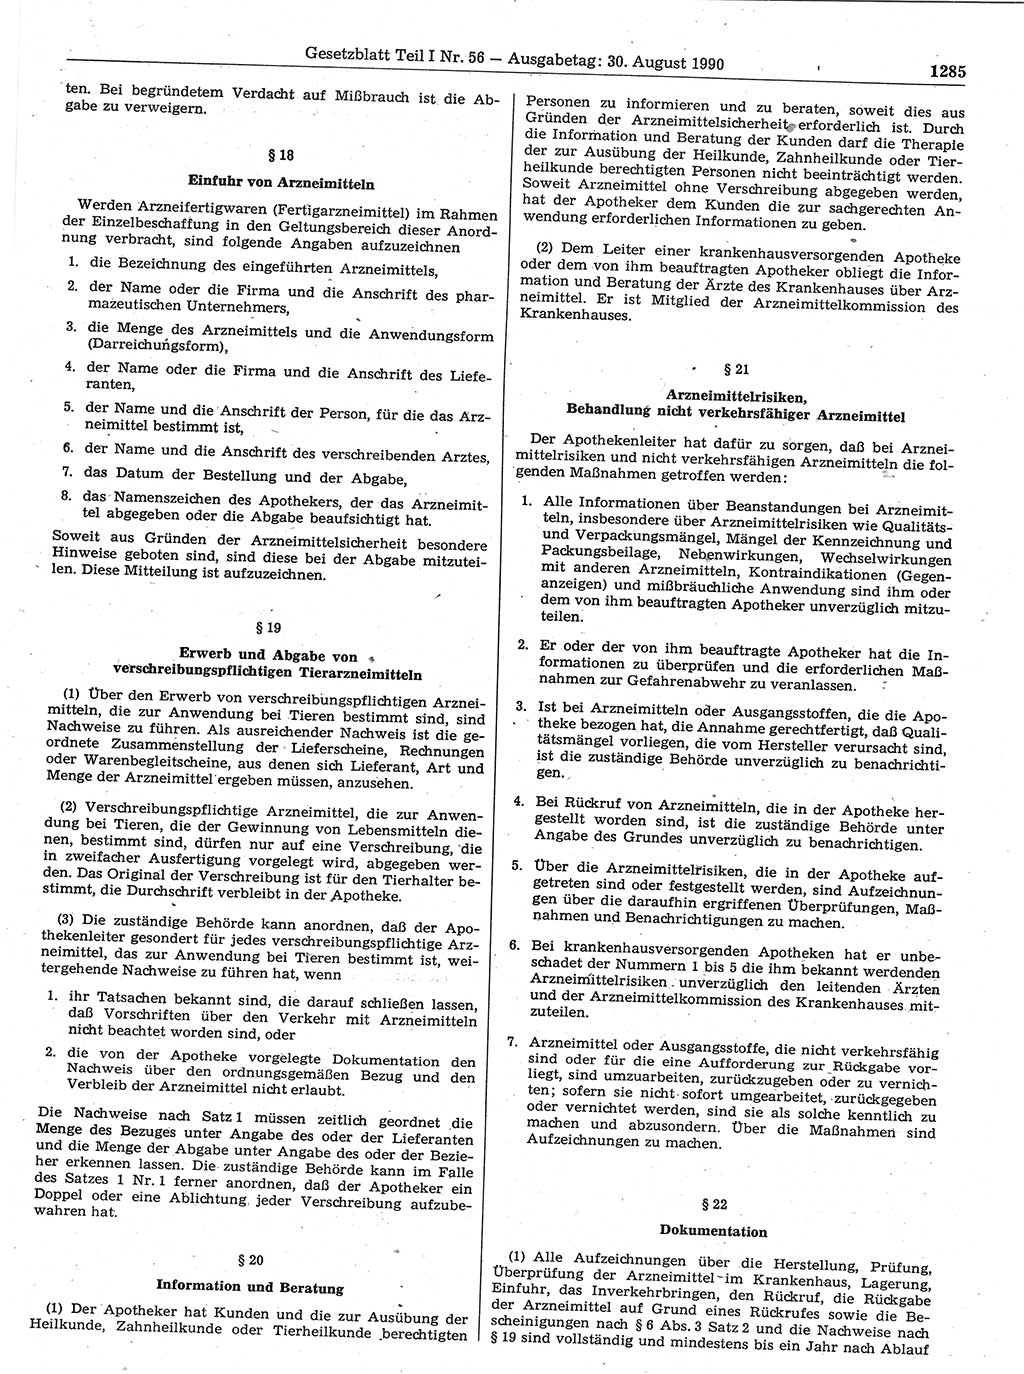 Gesetzblatt (GBl.) der Deutschen Demokratischen Republik (DDR) Teil Ⅰ 1990, Seite 1285 (GBl. DDR Ⅰ 1990, S. 1285)